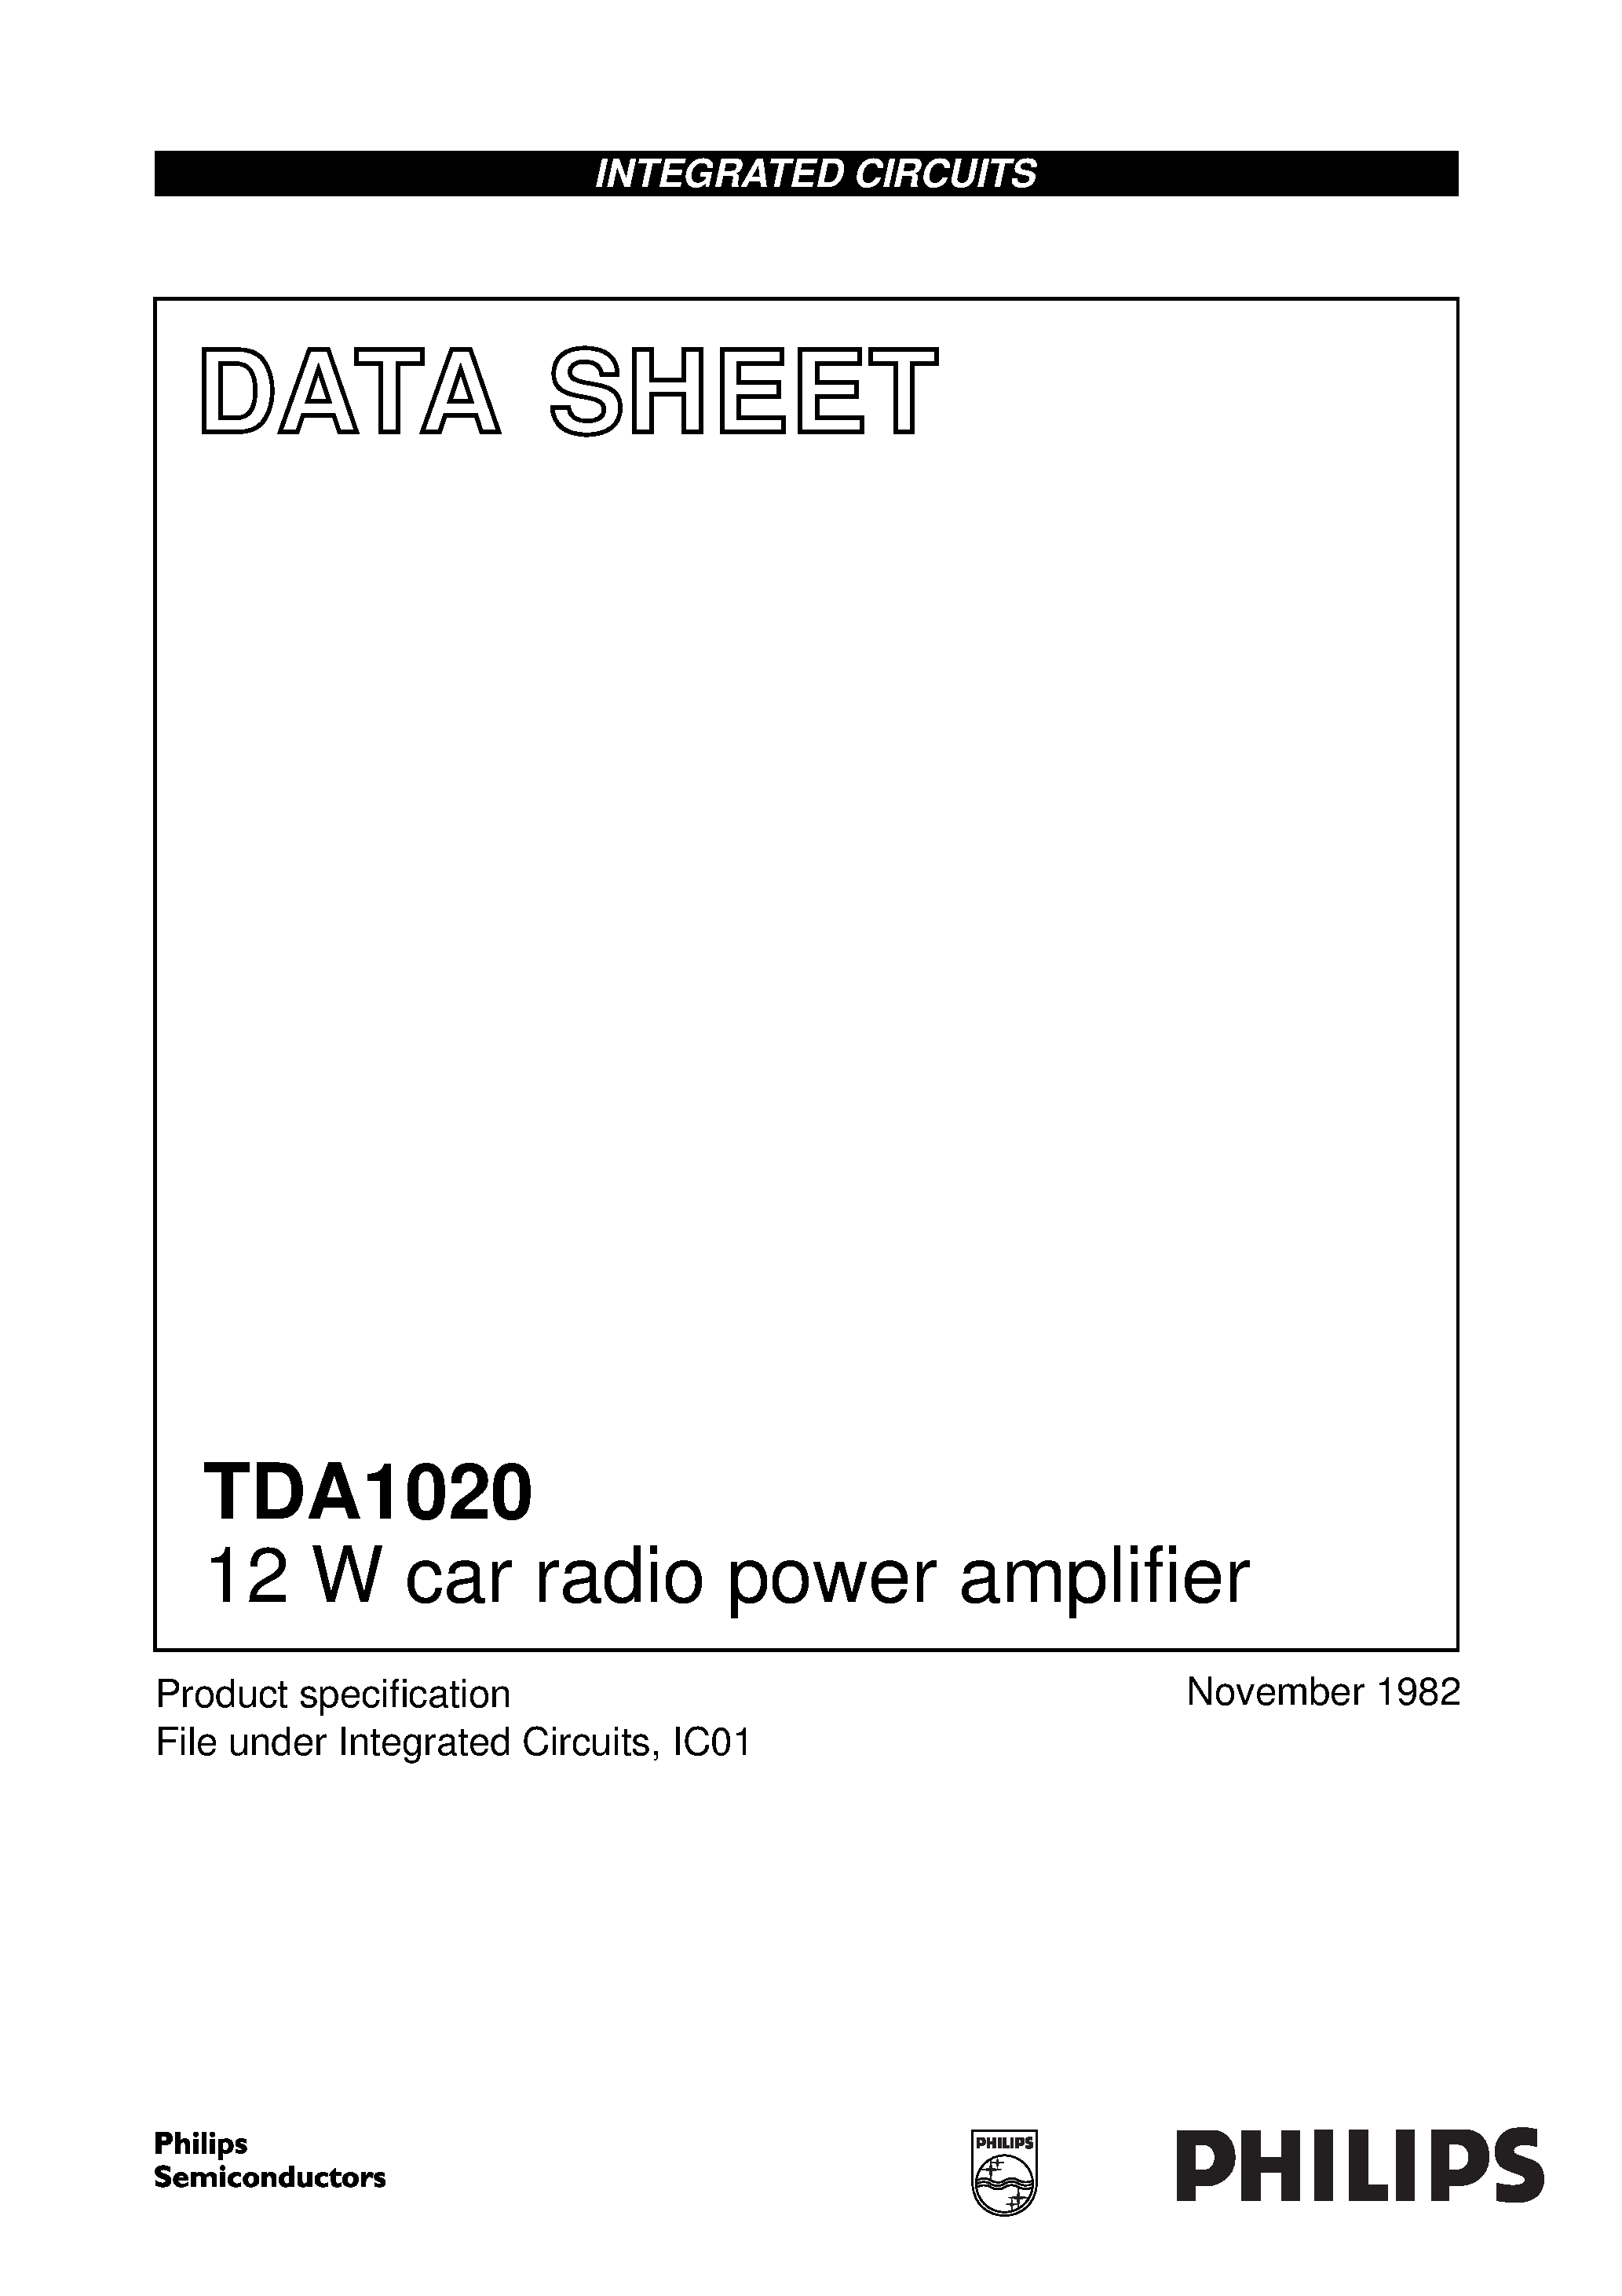 Даташит TDA1020 - 12 W car radio power amplifier страница 1